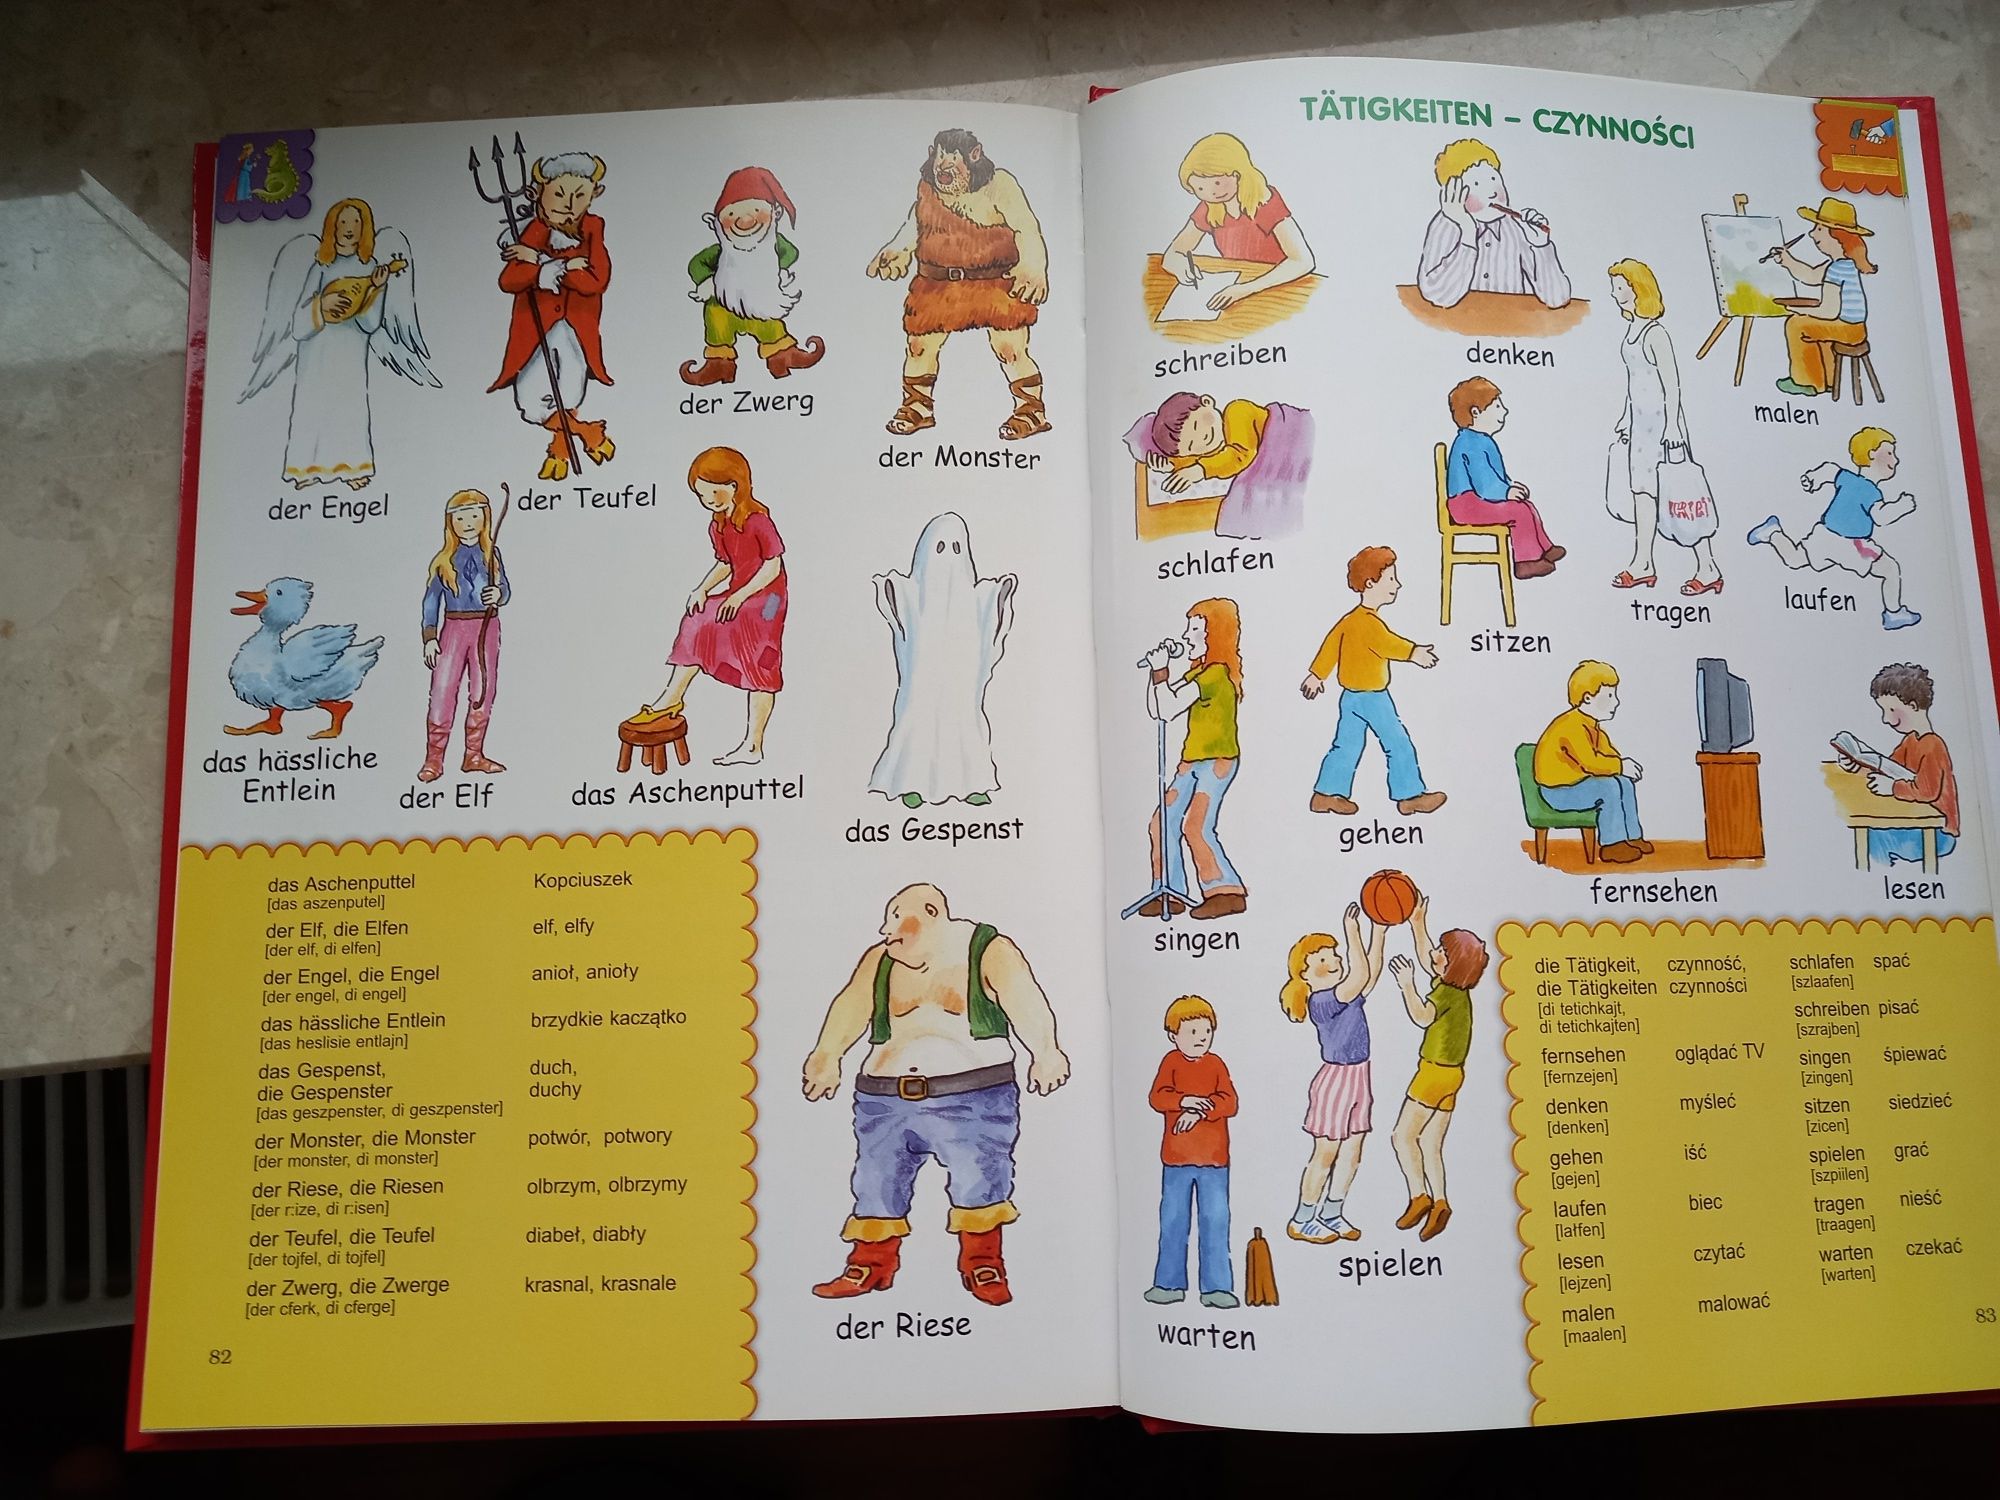 Obrazkowy słownik języka niemieckiego dla najmłodszych